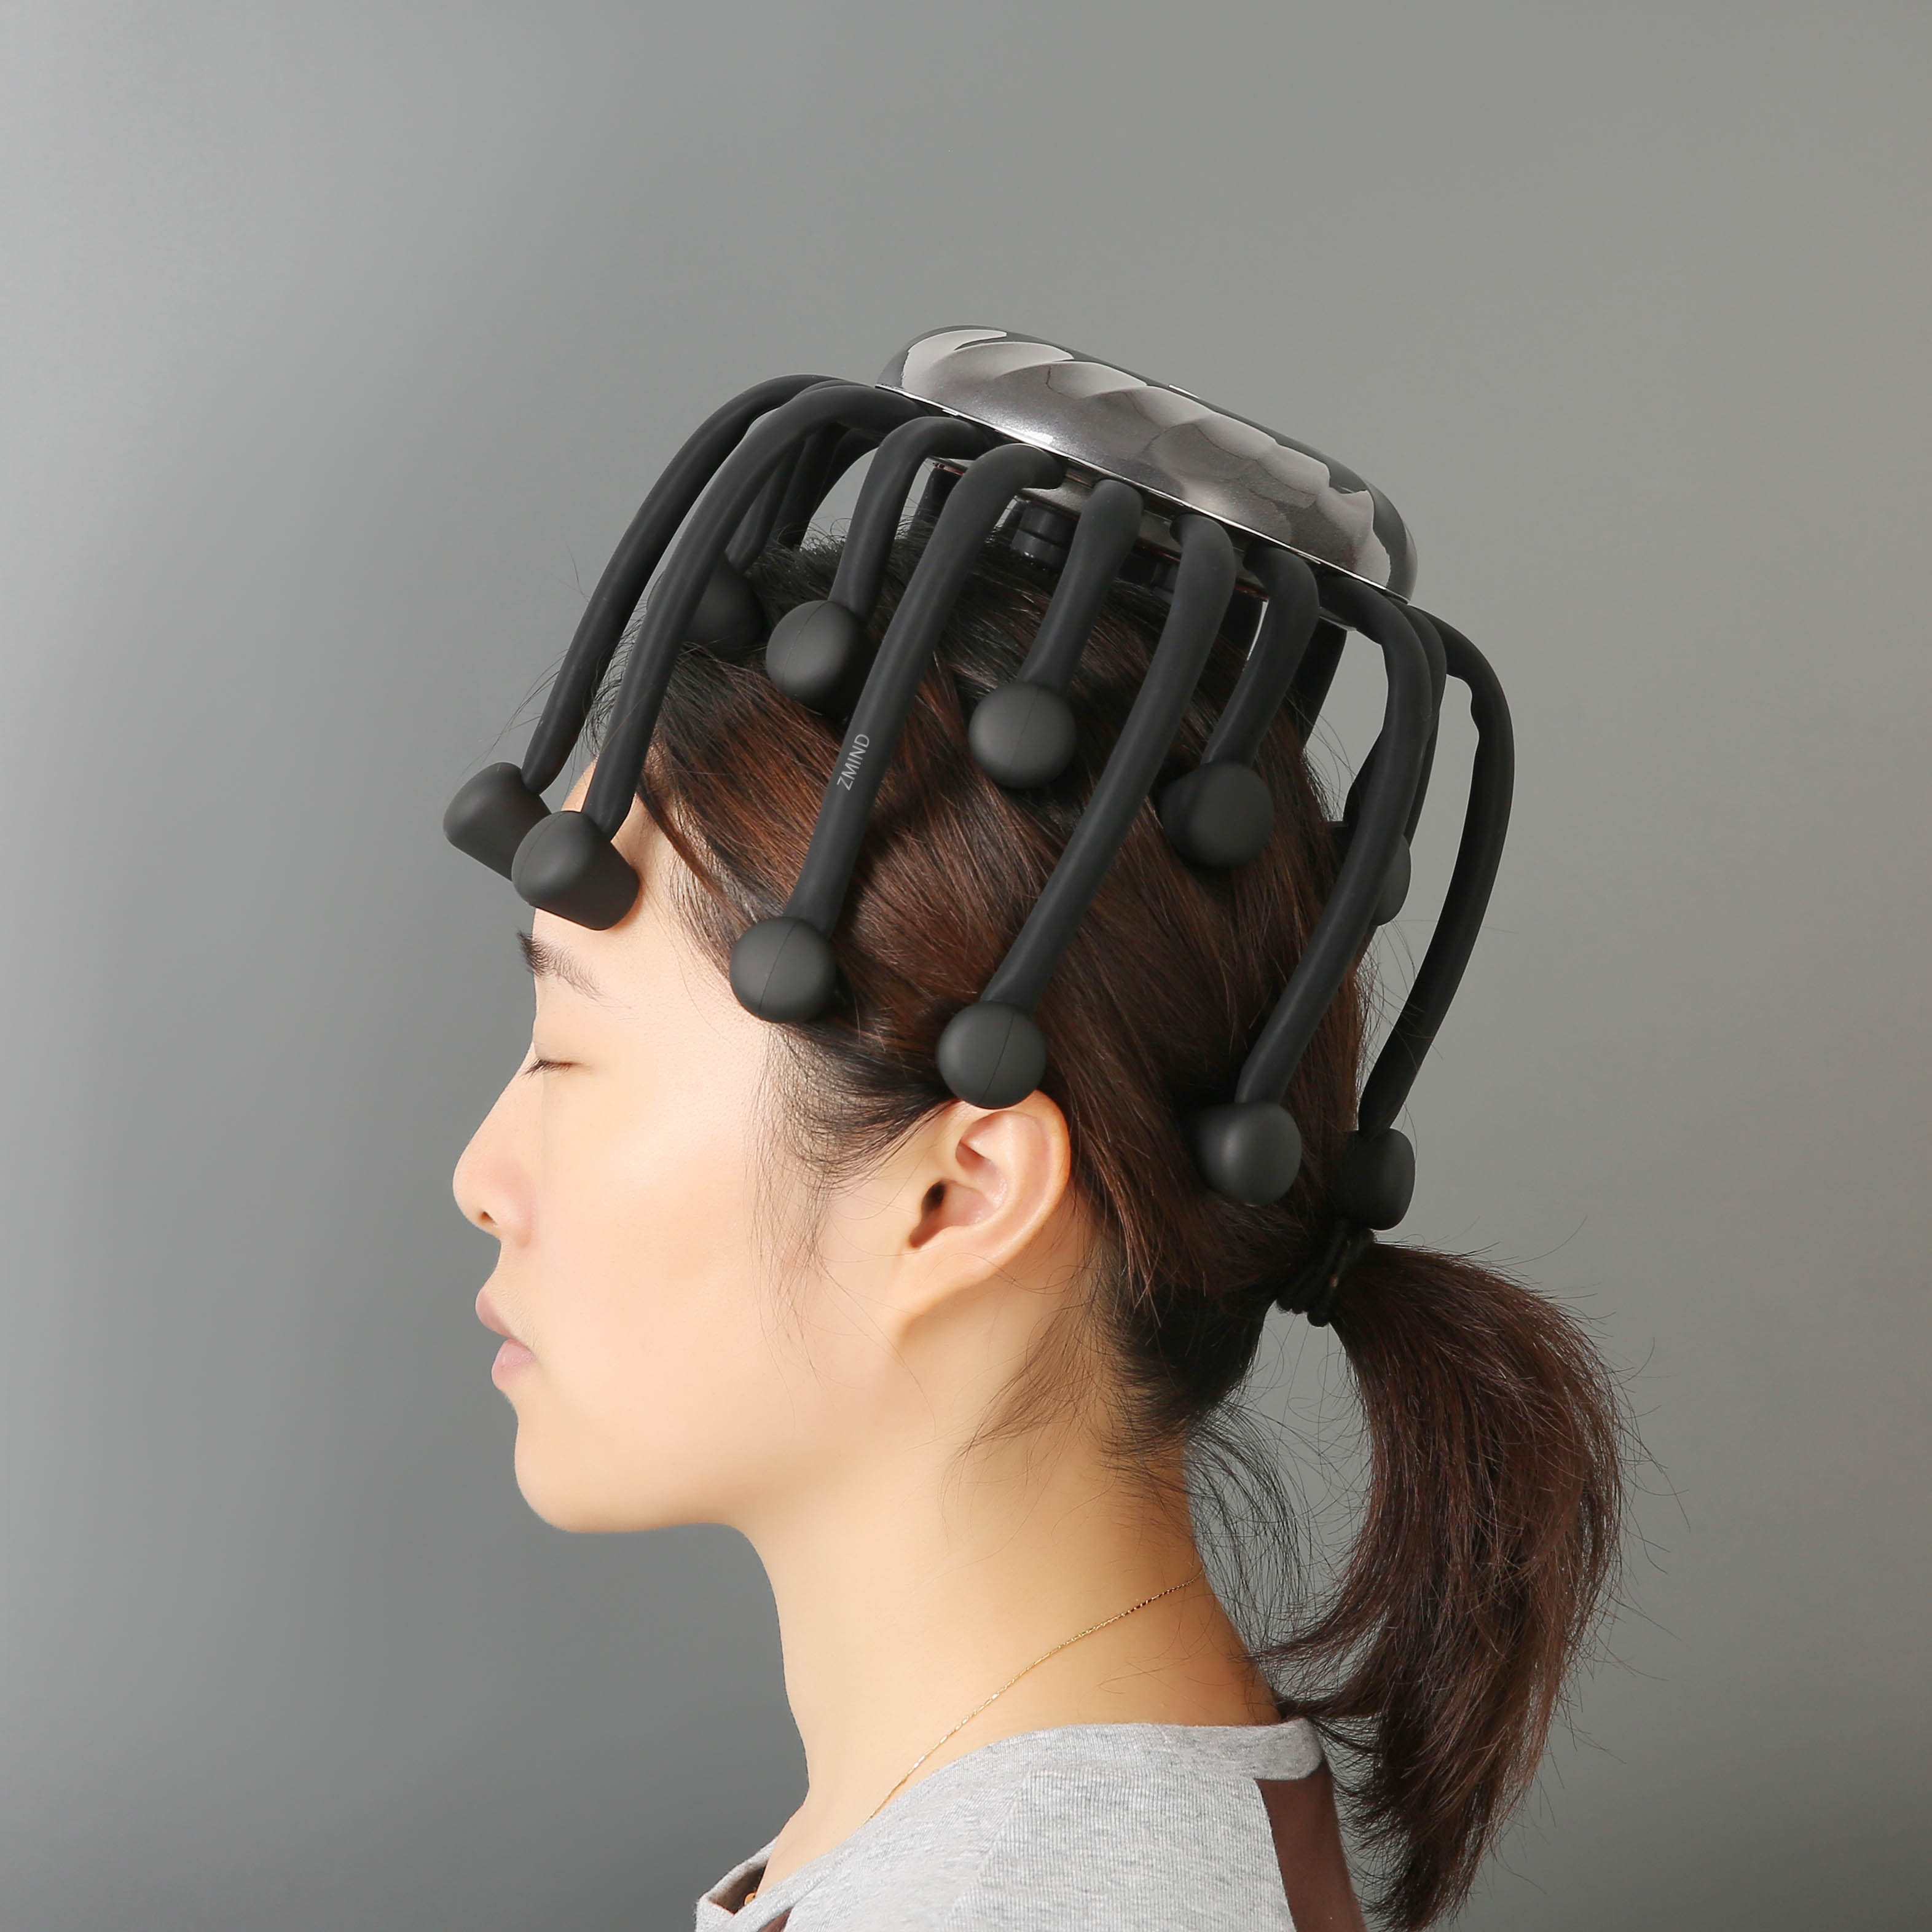 ZMIND B002 octopus head massager handheld scalp massager portable head scratcher